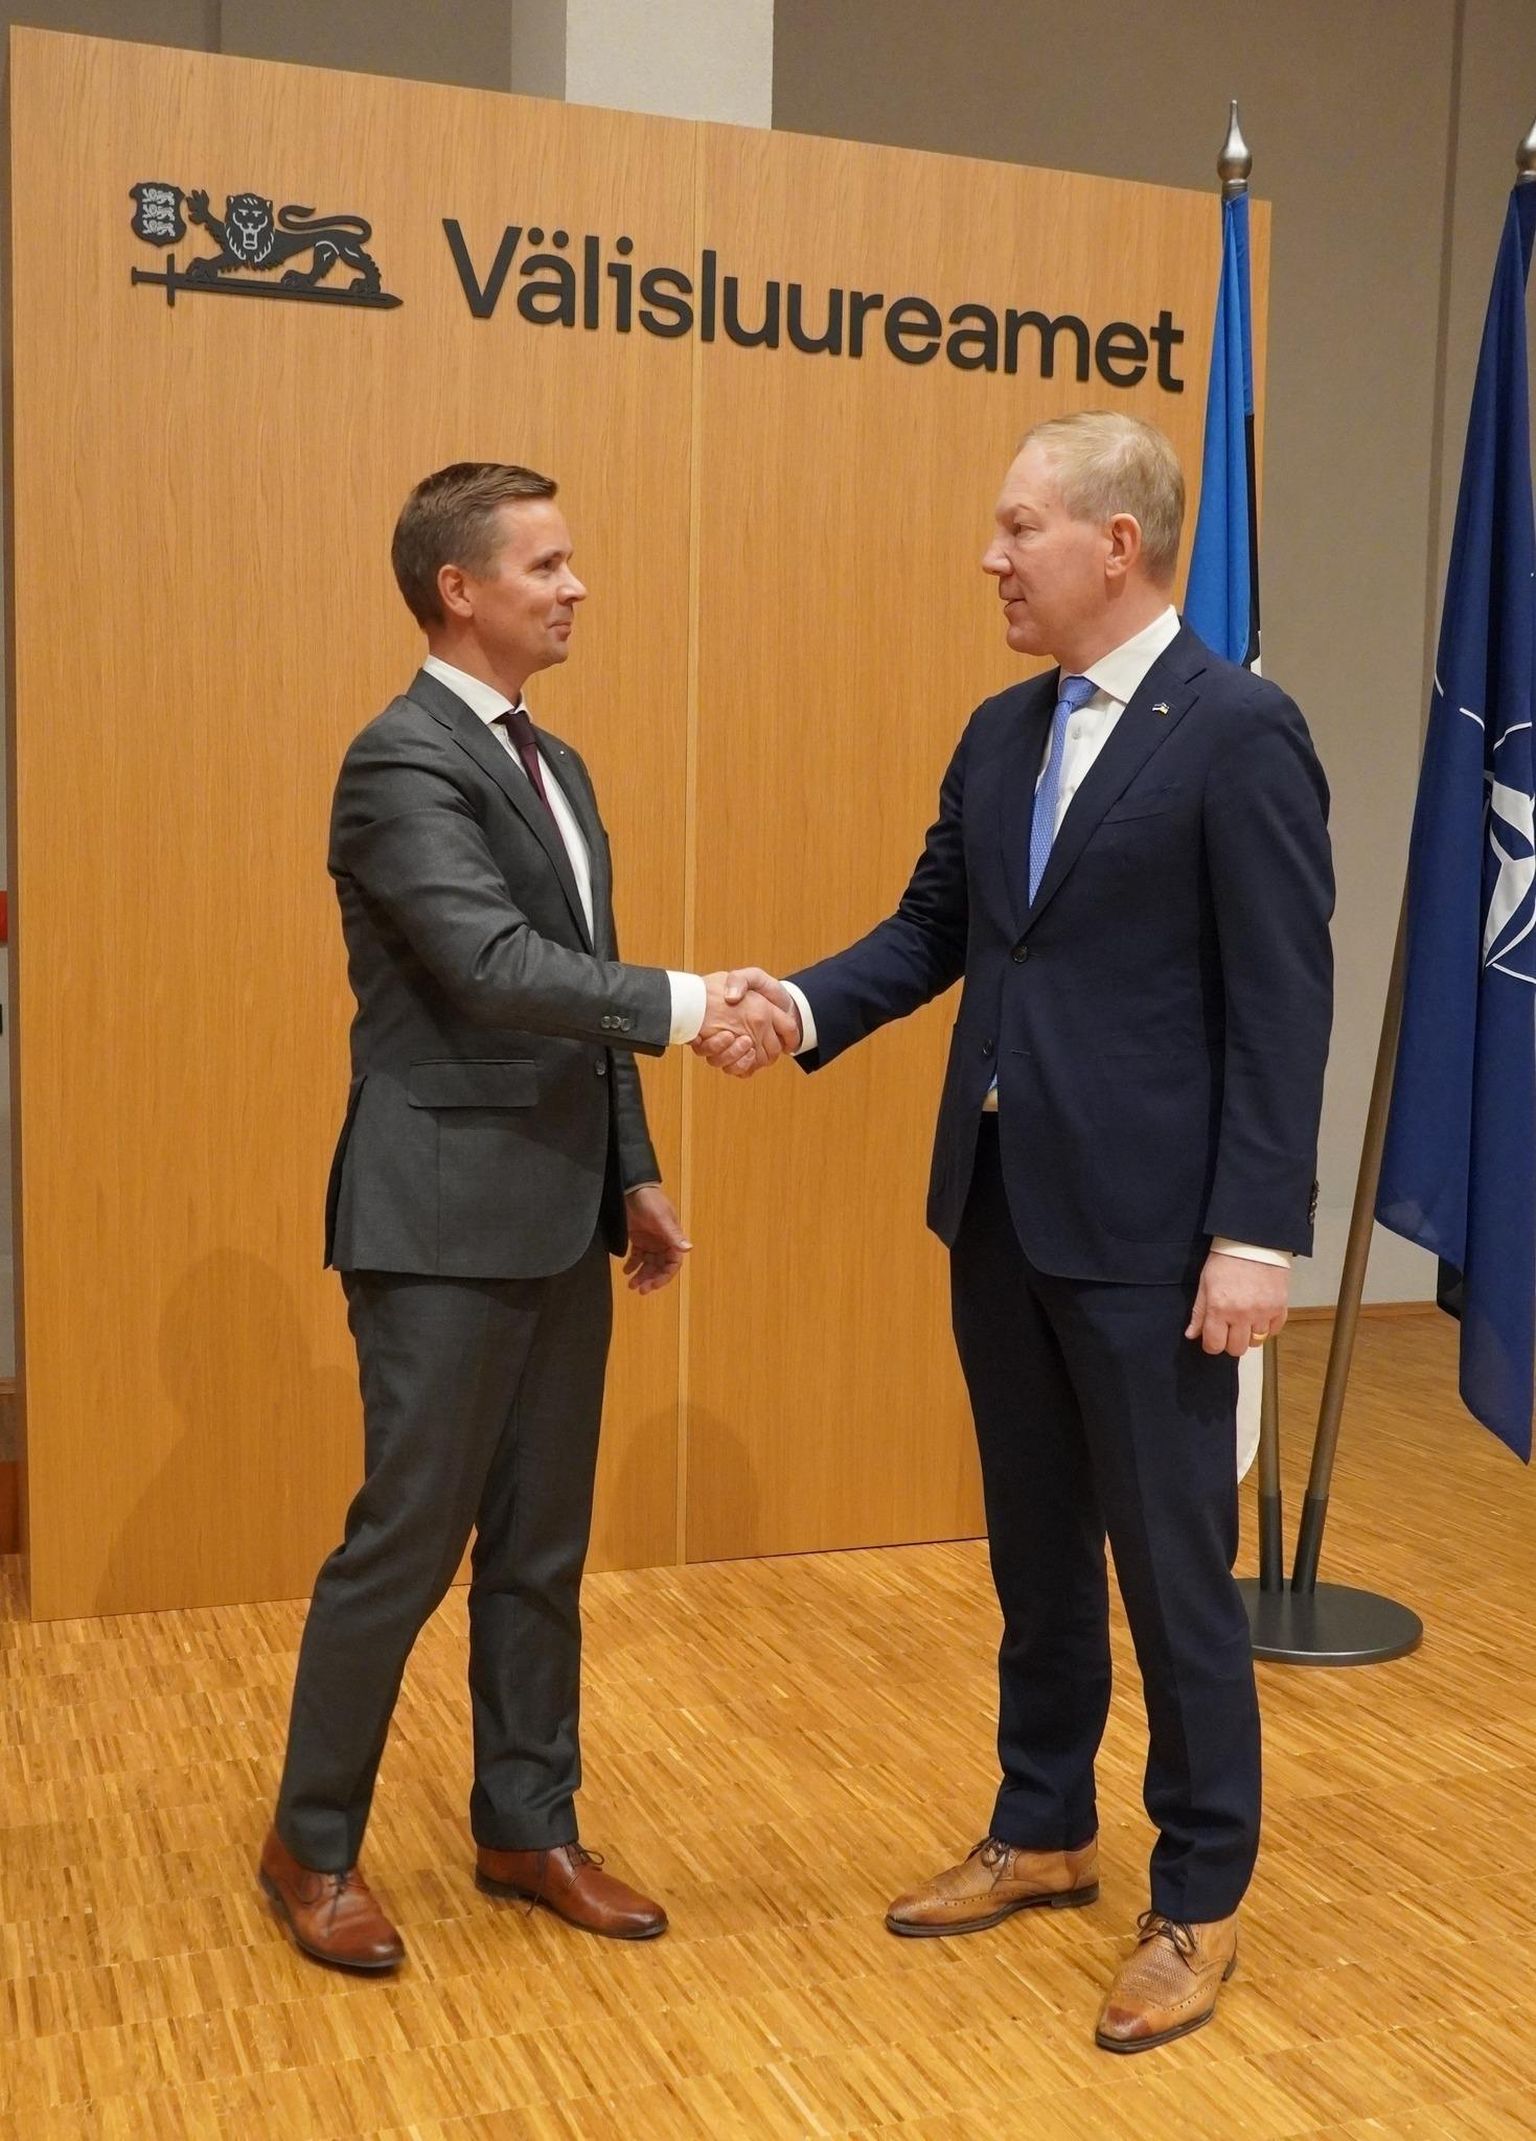 25. oktoober 2022. Marko Mihkelson tänas koostöö eest välisluureameti lahkuvat juhti Mikk Marranit.